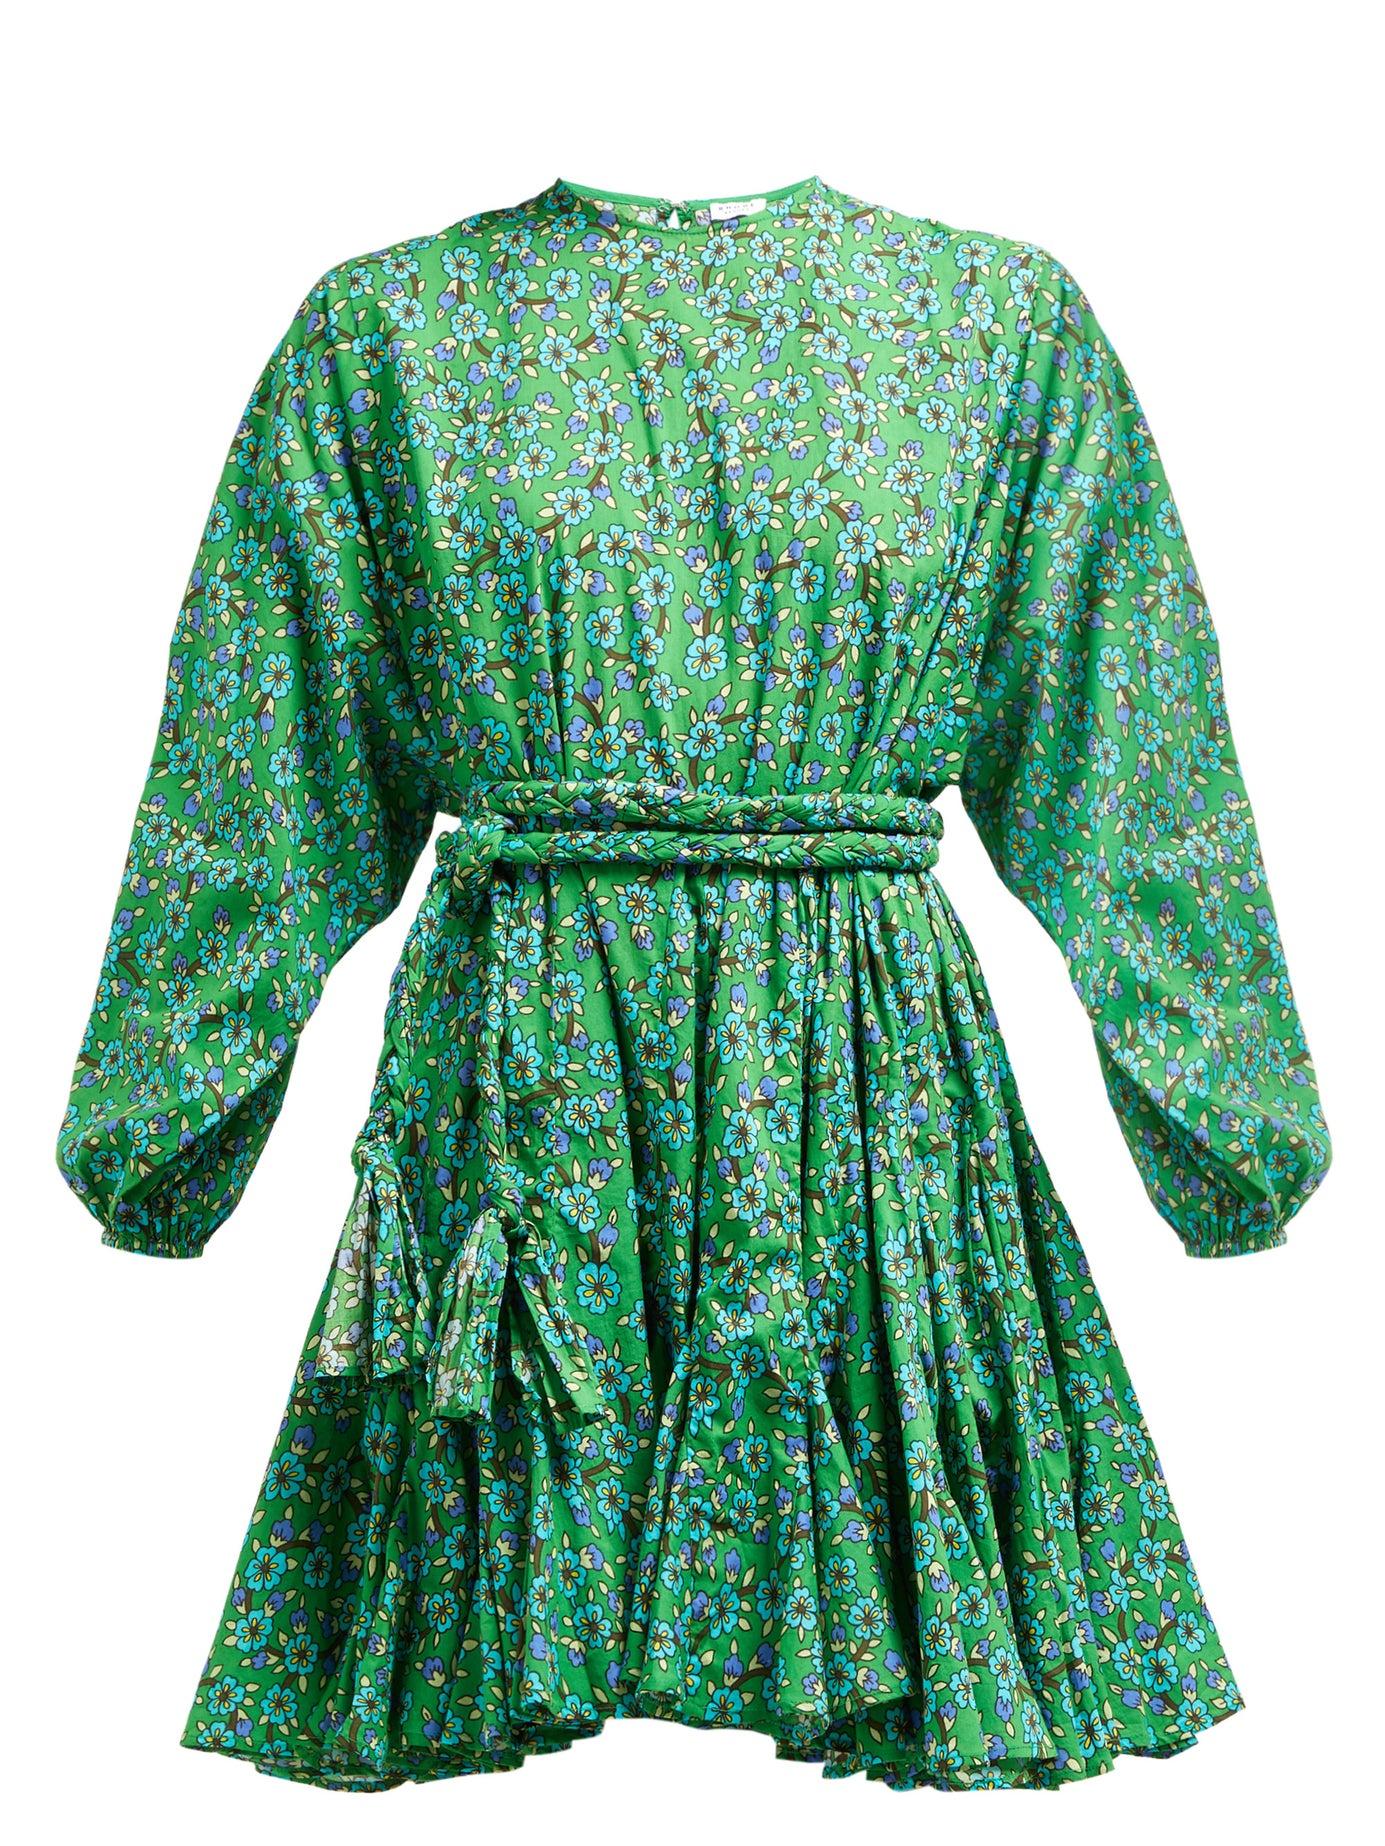 RHODE Ella Floral-print Cotton Mini Dress in Green Print (Green) - Lyst